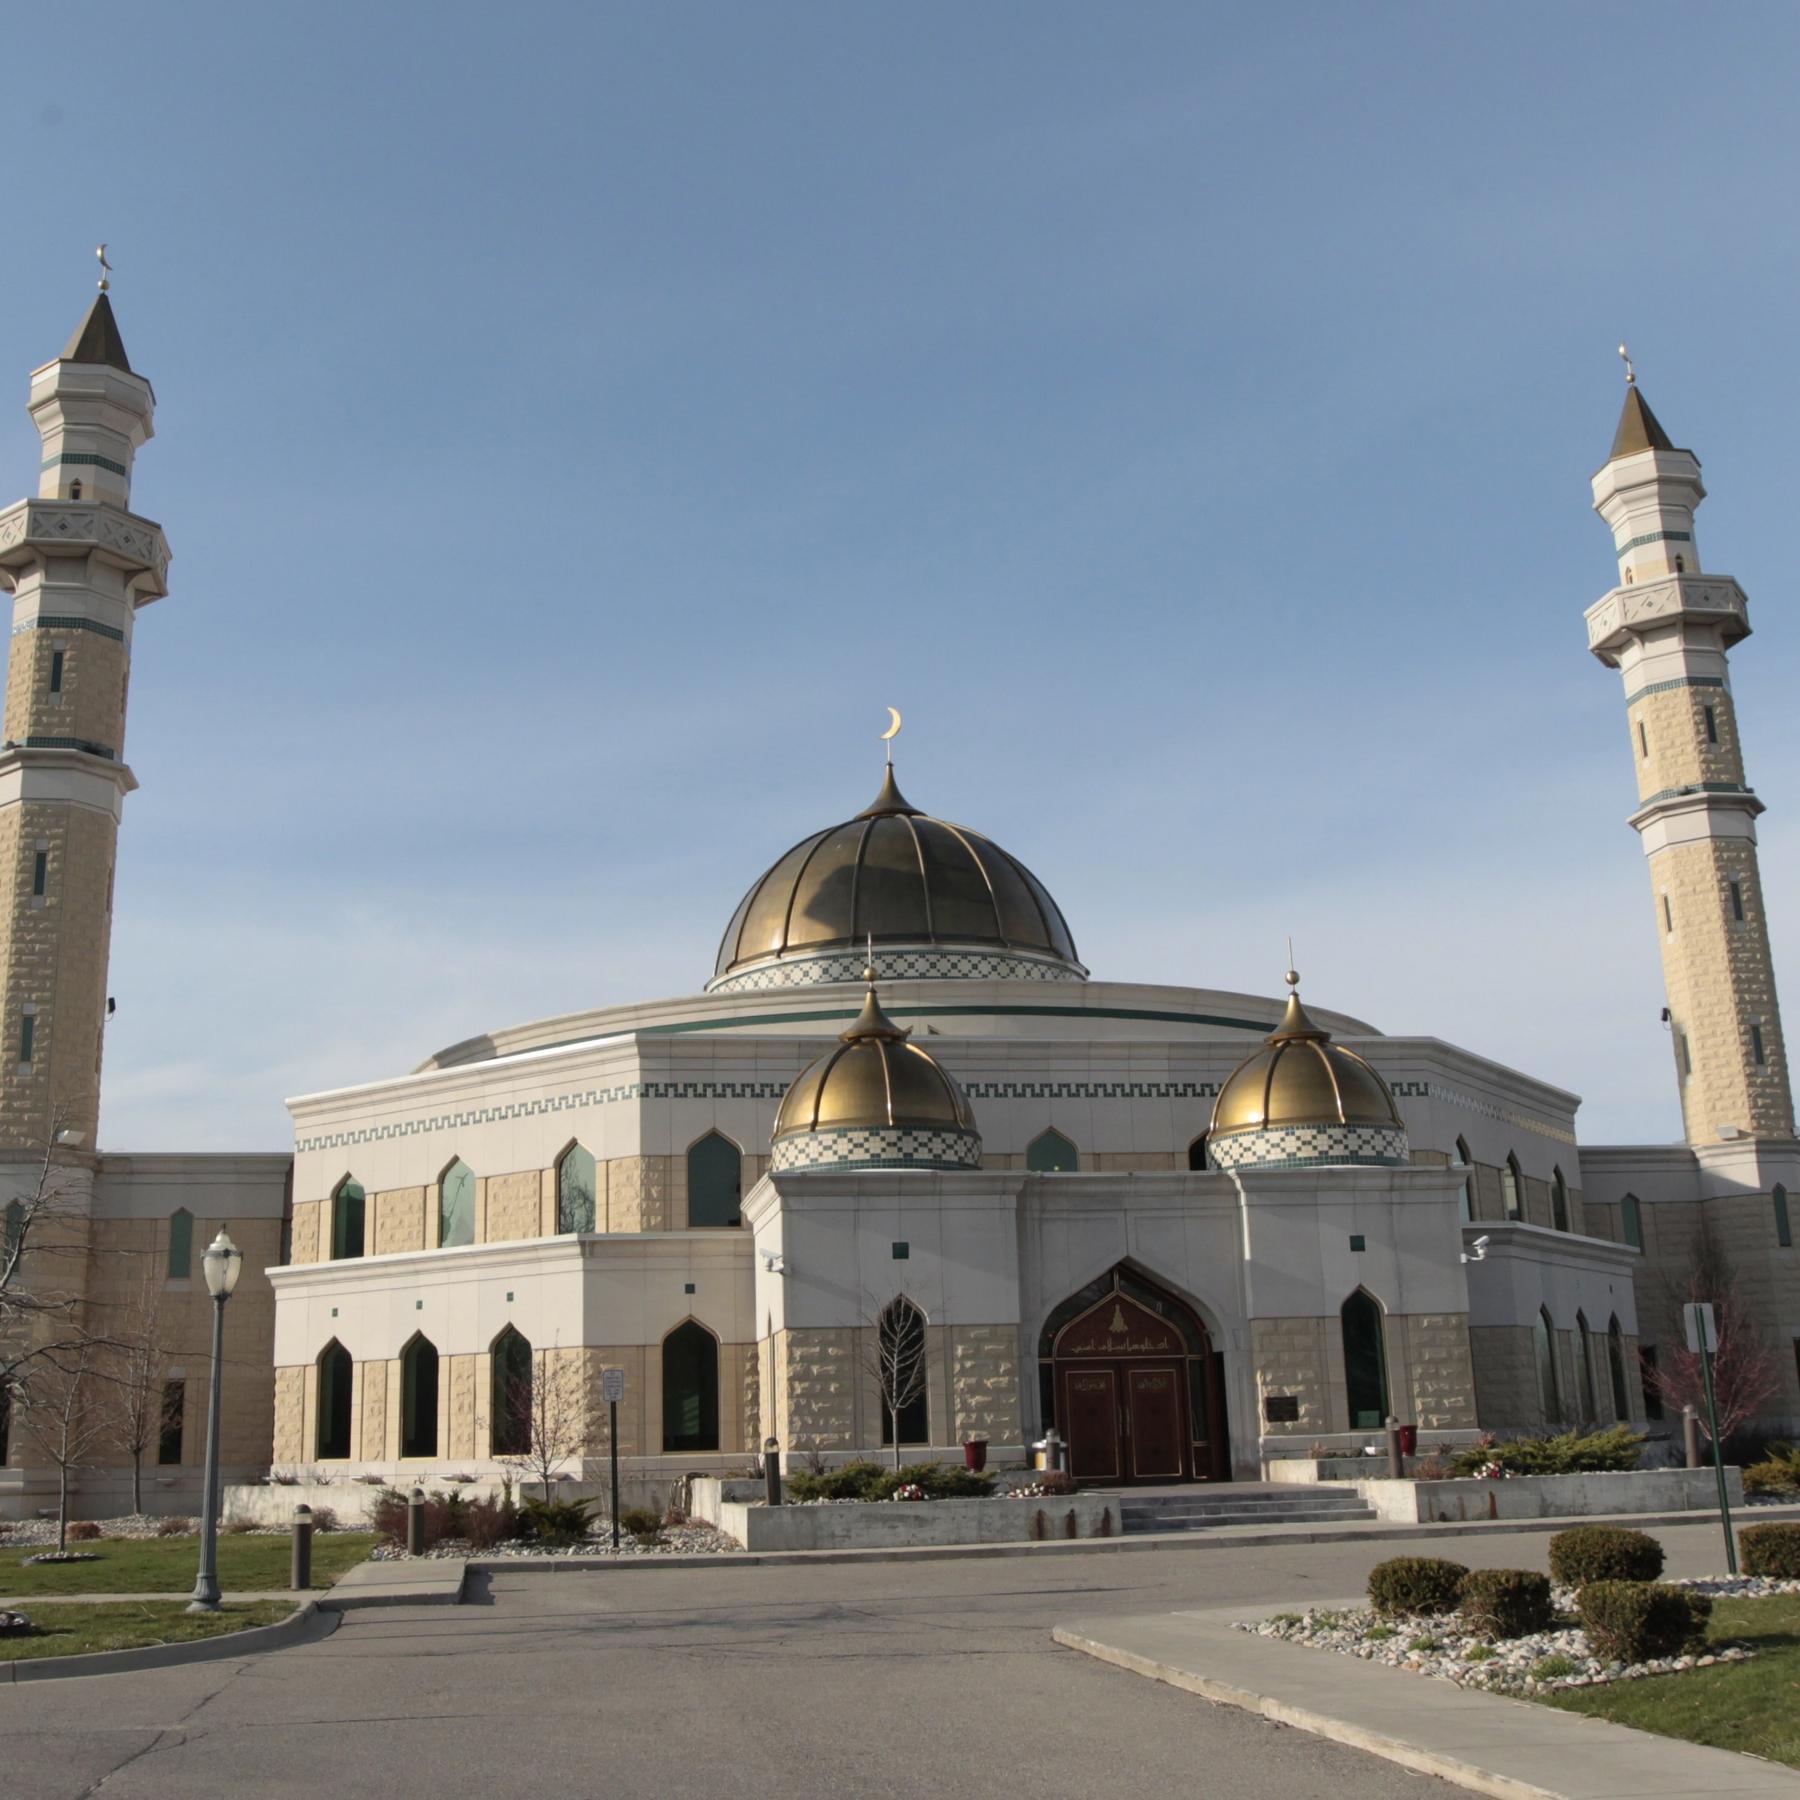 Muslimische Hauptstadt der USA - Dearborn, Michigan